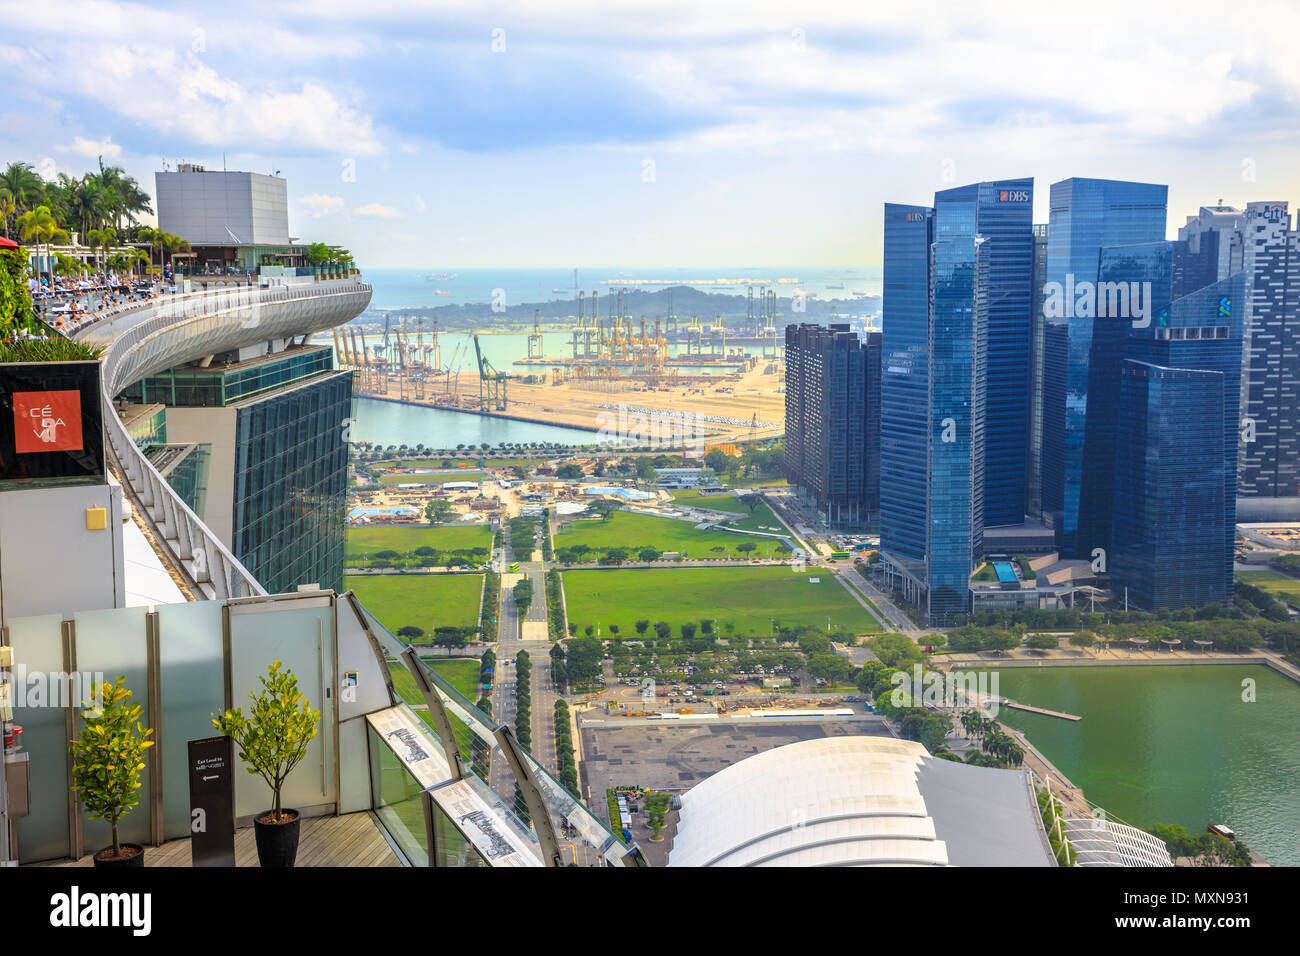 Singapur - Mai 3, 2018: skypark Aussichtsplattform an der Marina Bay Sands Hotel mit Blick auf den randlosen Pool, Singapurs höchsten Pool auf dem Dach und Central Business District Skyline. Luftaufnahme. Stockfoto